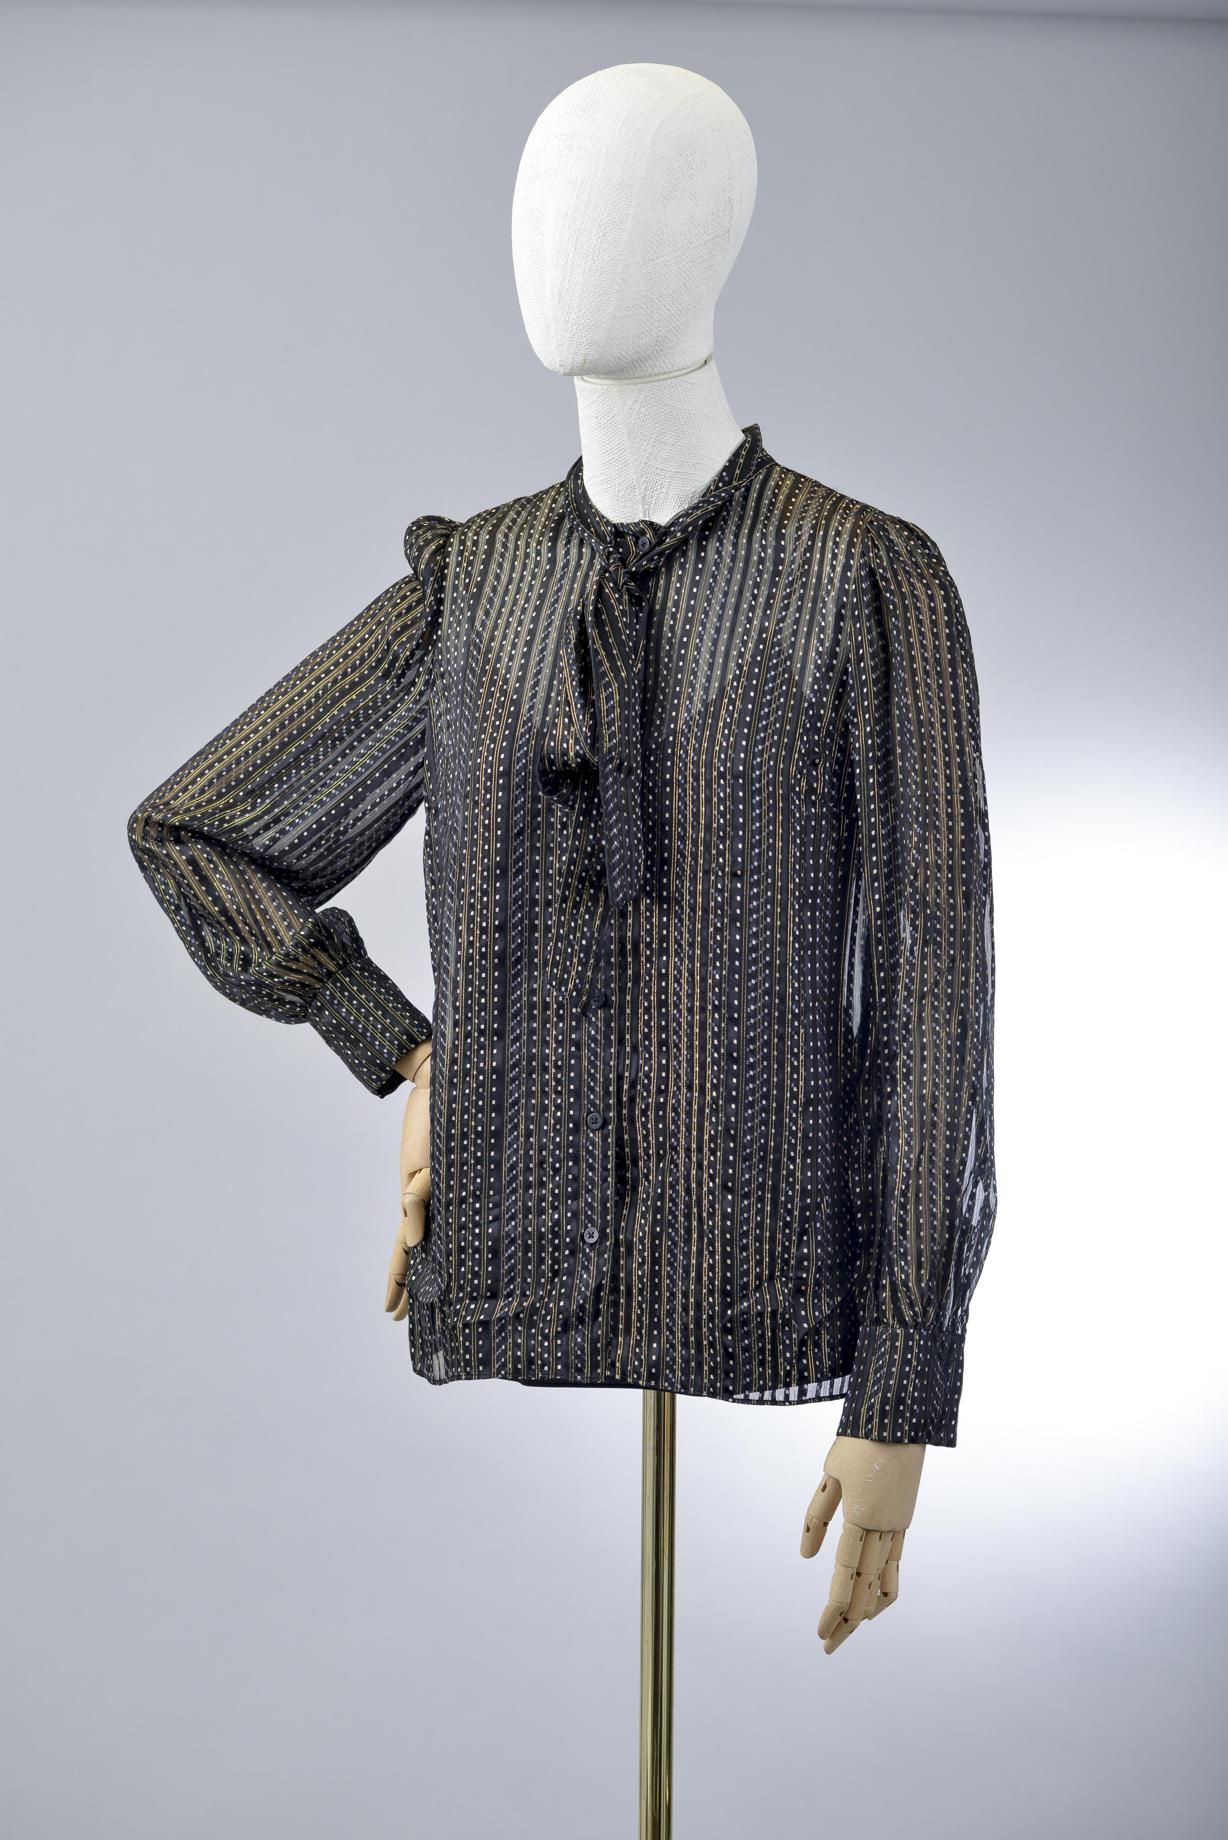 Null *尺寸XS DVF - Diane Von Fürstenberg

套装包括。

-丝质雪纺上衣，型号为 "DVF Lanie"，缝制并印有金色和黑&hellip;